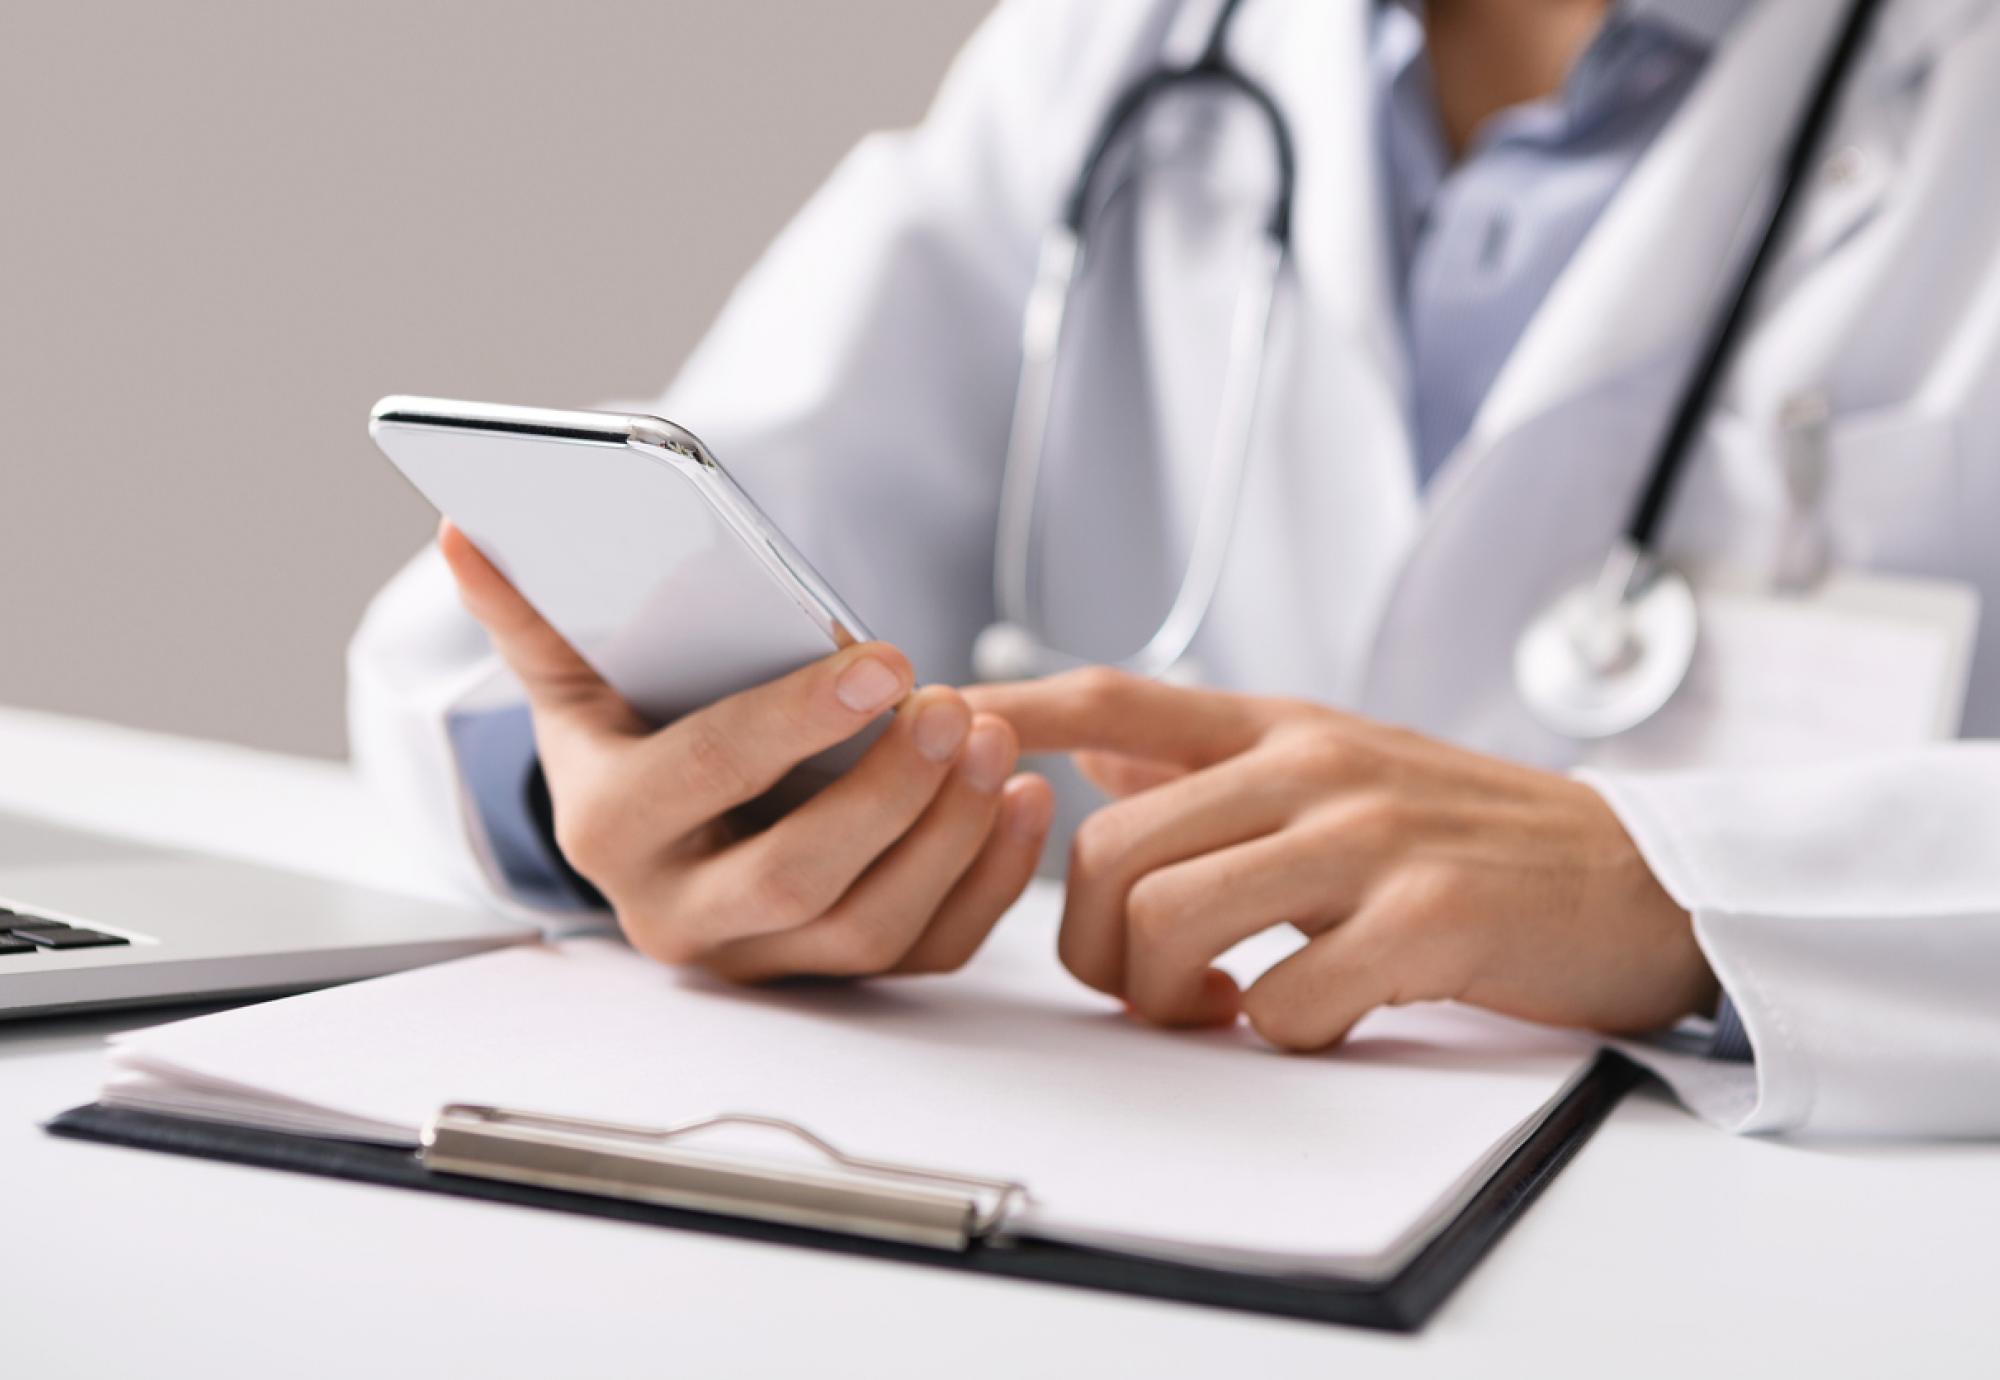 Doctor holding smartphone depicting online GP registration service and digital health